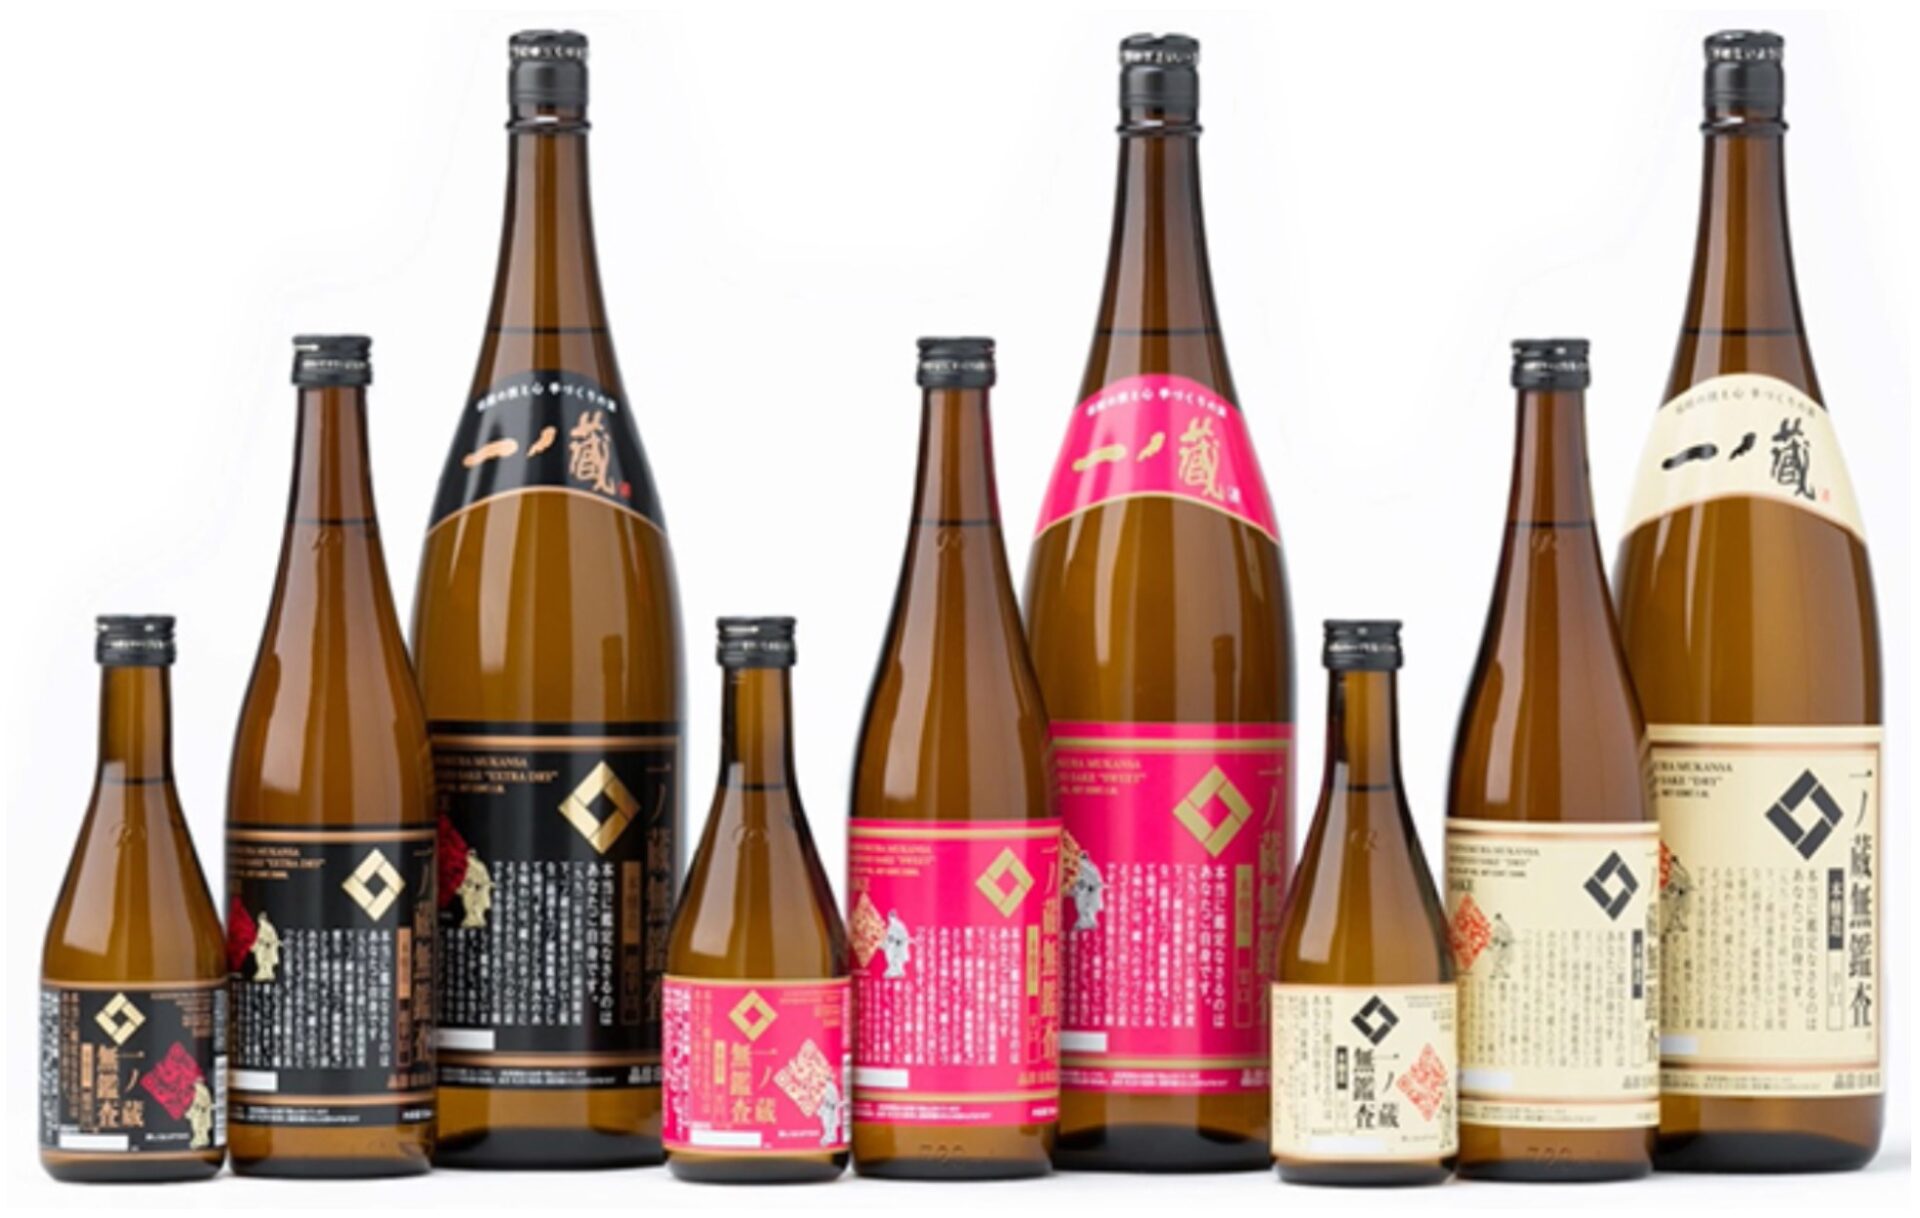 What kind of sake brand is 一ノ蔵 Ichinokura?